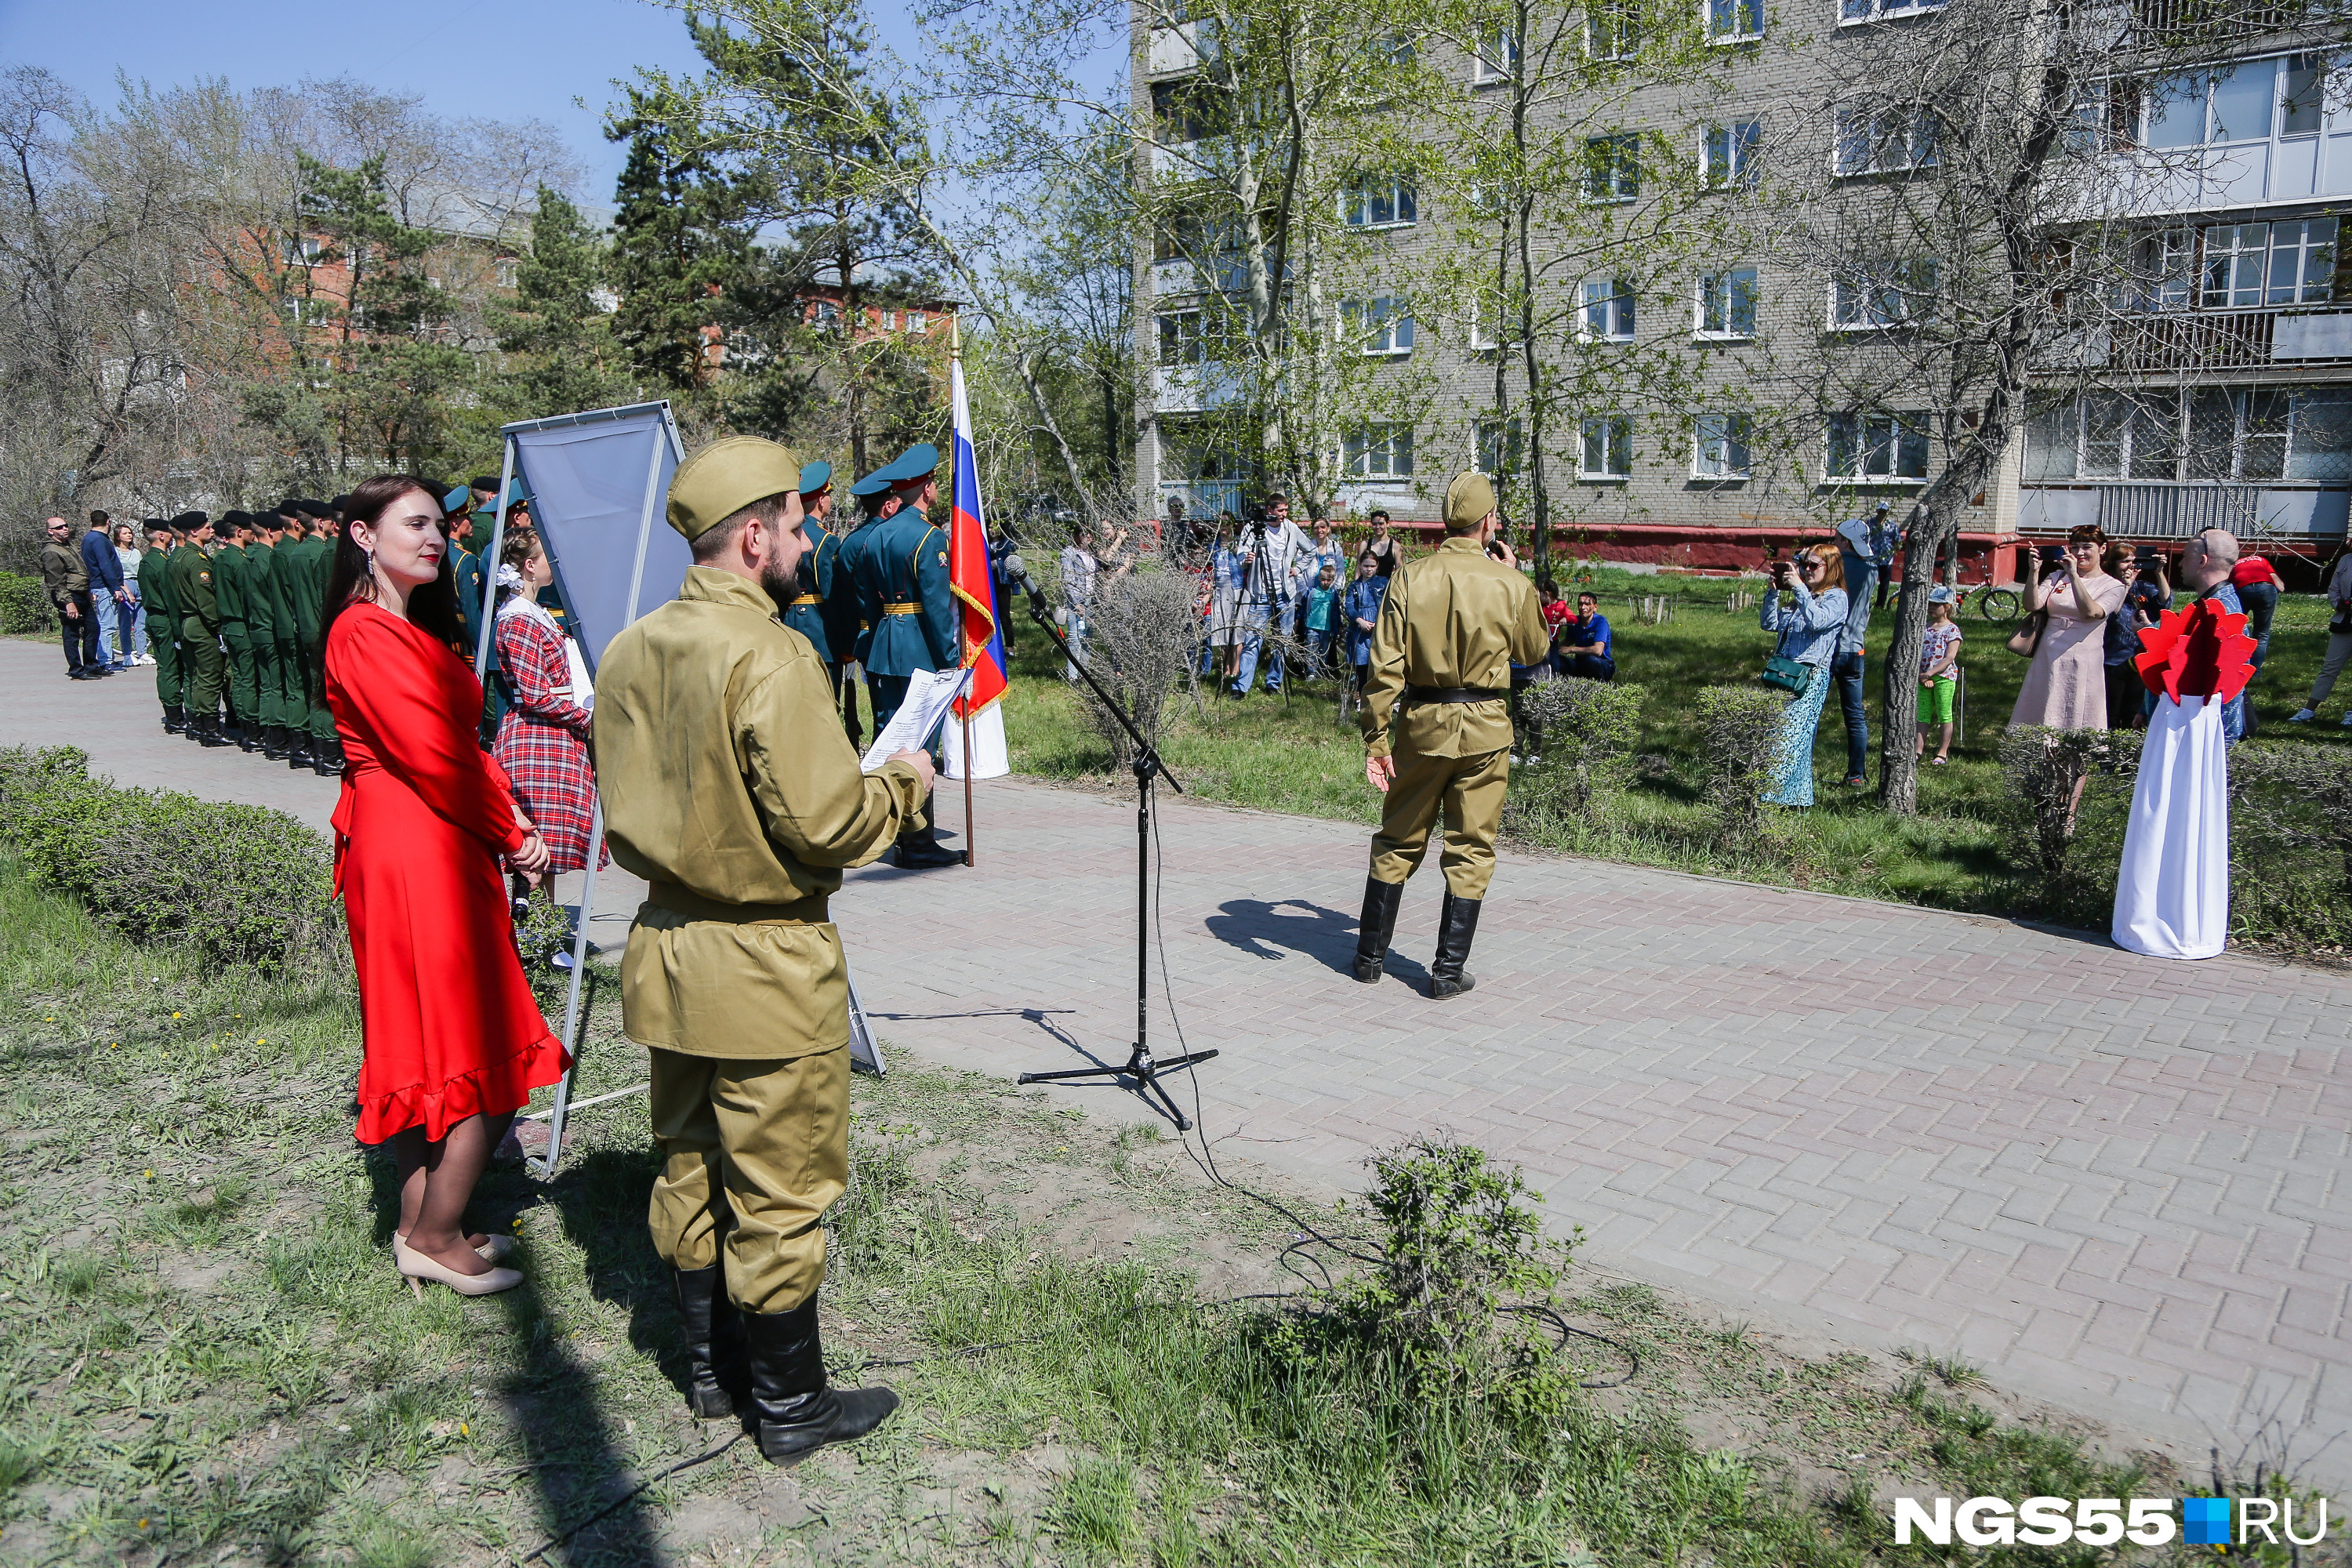 На личном параде для Александра Ивановича также собрались немногочисленные зрители